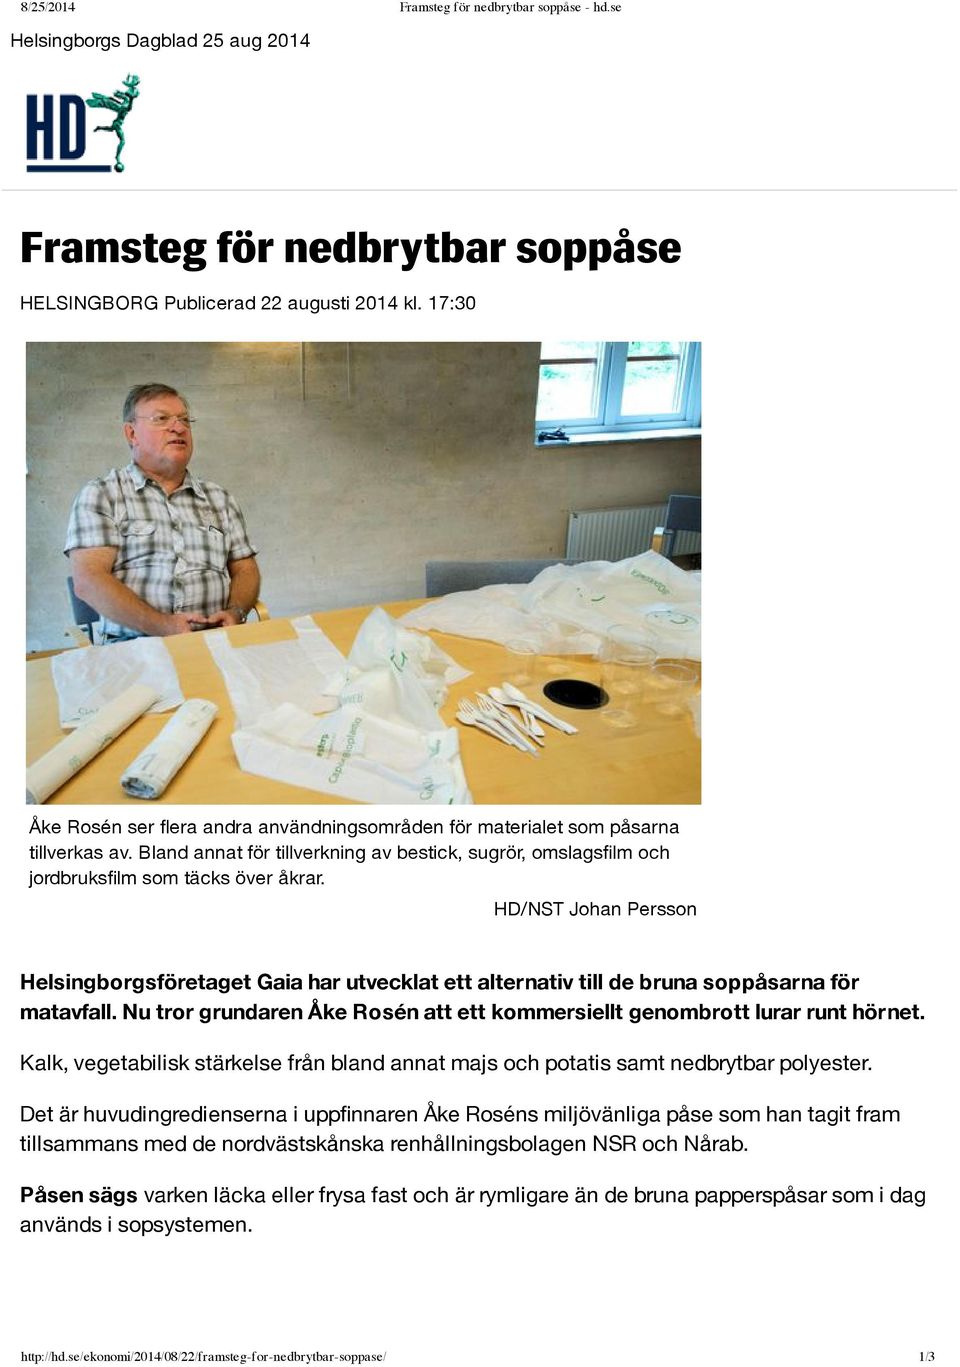 HD/NST Johan Persson Helsingborgsföretaget Gaia har utvecklat ett alternativ till de bruna soppåsarna för matavfall. Nu tror grundaren Åke Rosén att ett kommersiellt genombrott lurar runt hörnet.